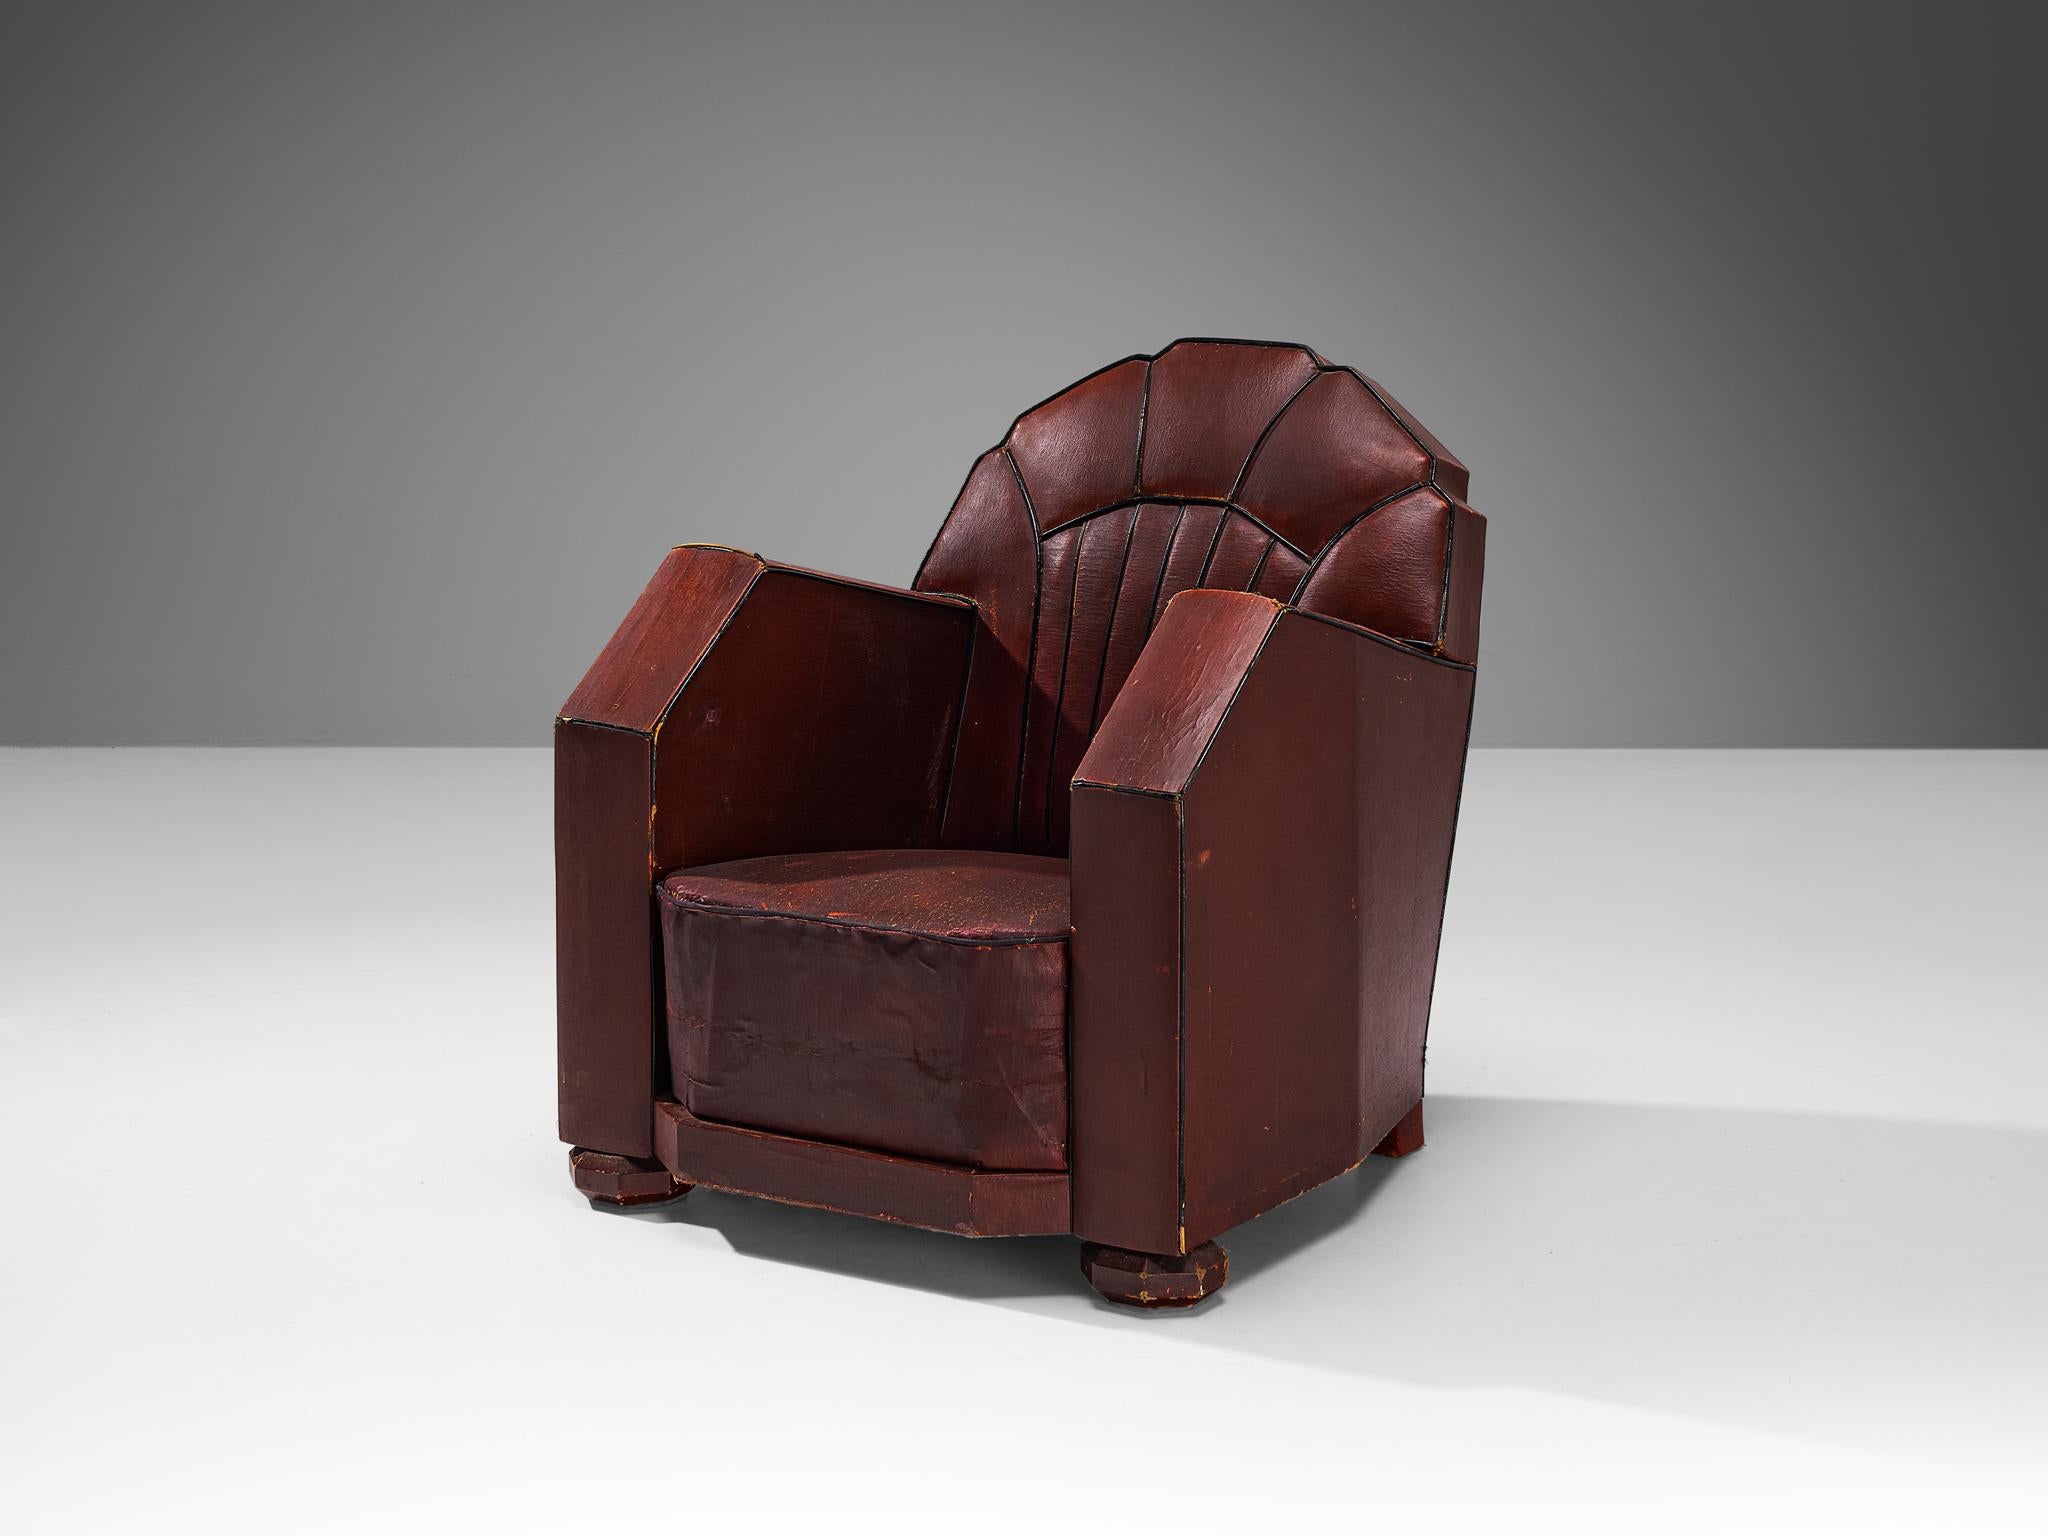 Sessel, Leder, Holz, Frankreich, 1930er Jahre

Dieser Sessel französischer Herkunft atmet zweifellos den Geist des Art déco der 1930er Jahre. Der Stuhl zeichnet sich durch schöne stromlinienförmige Linien und scharfe Kanten aus. Die Konturen werden